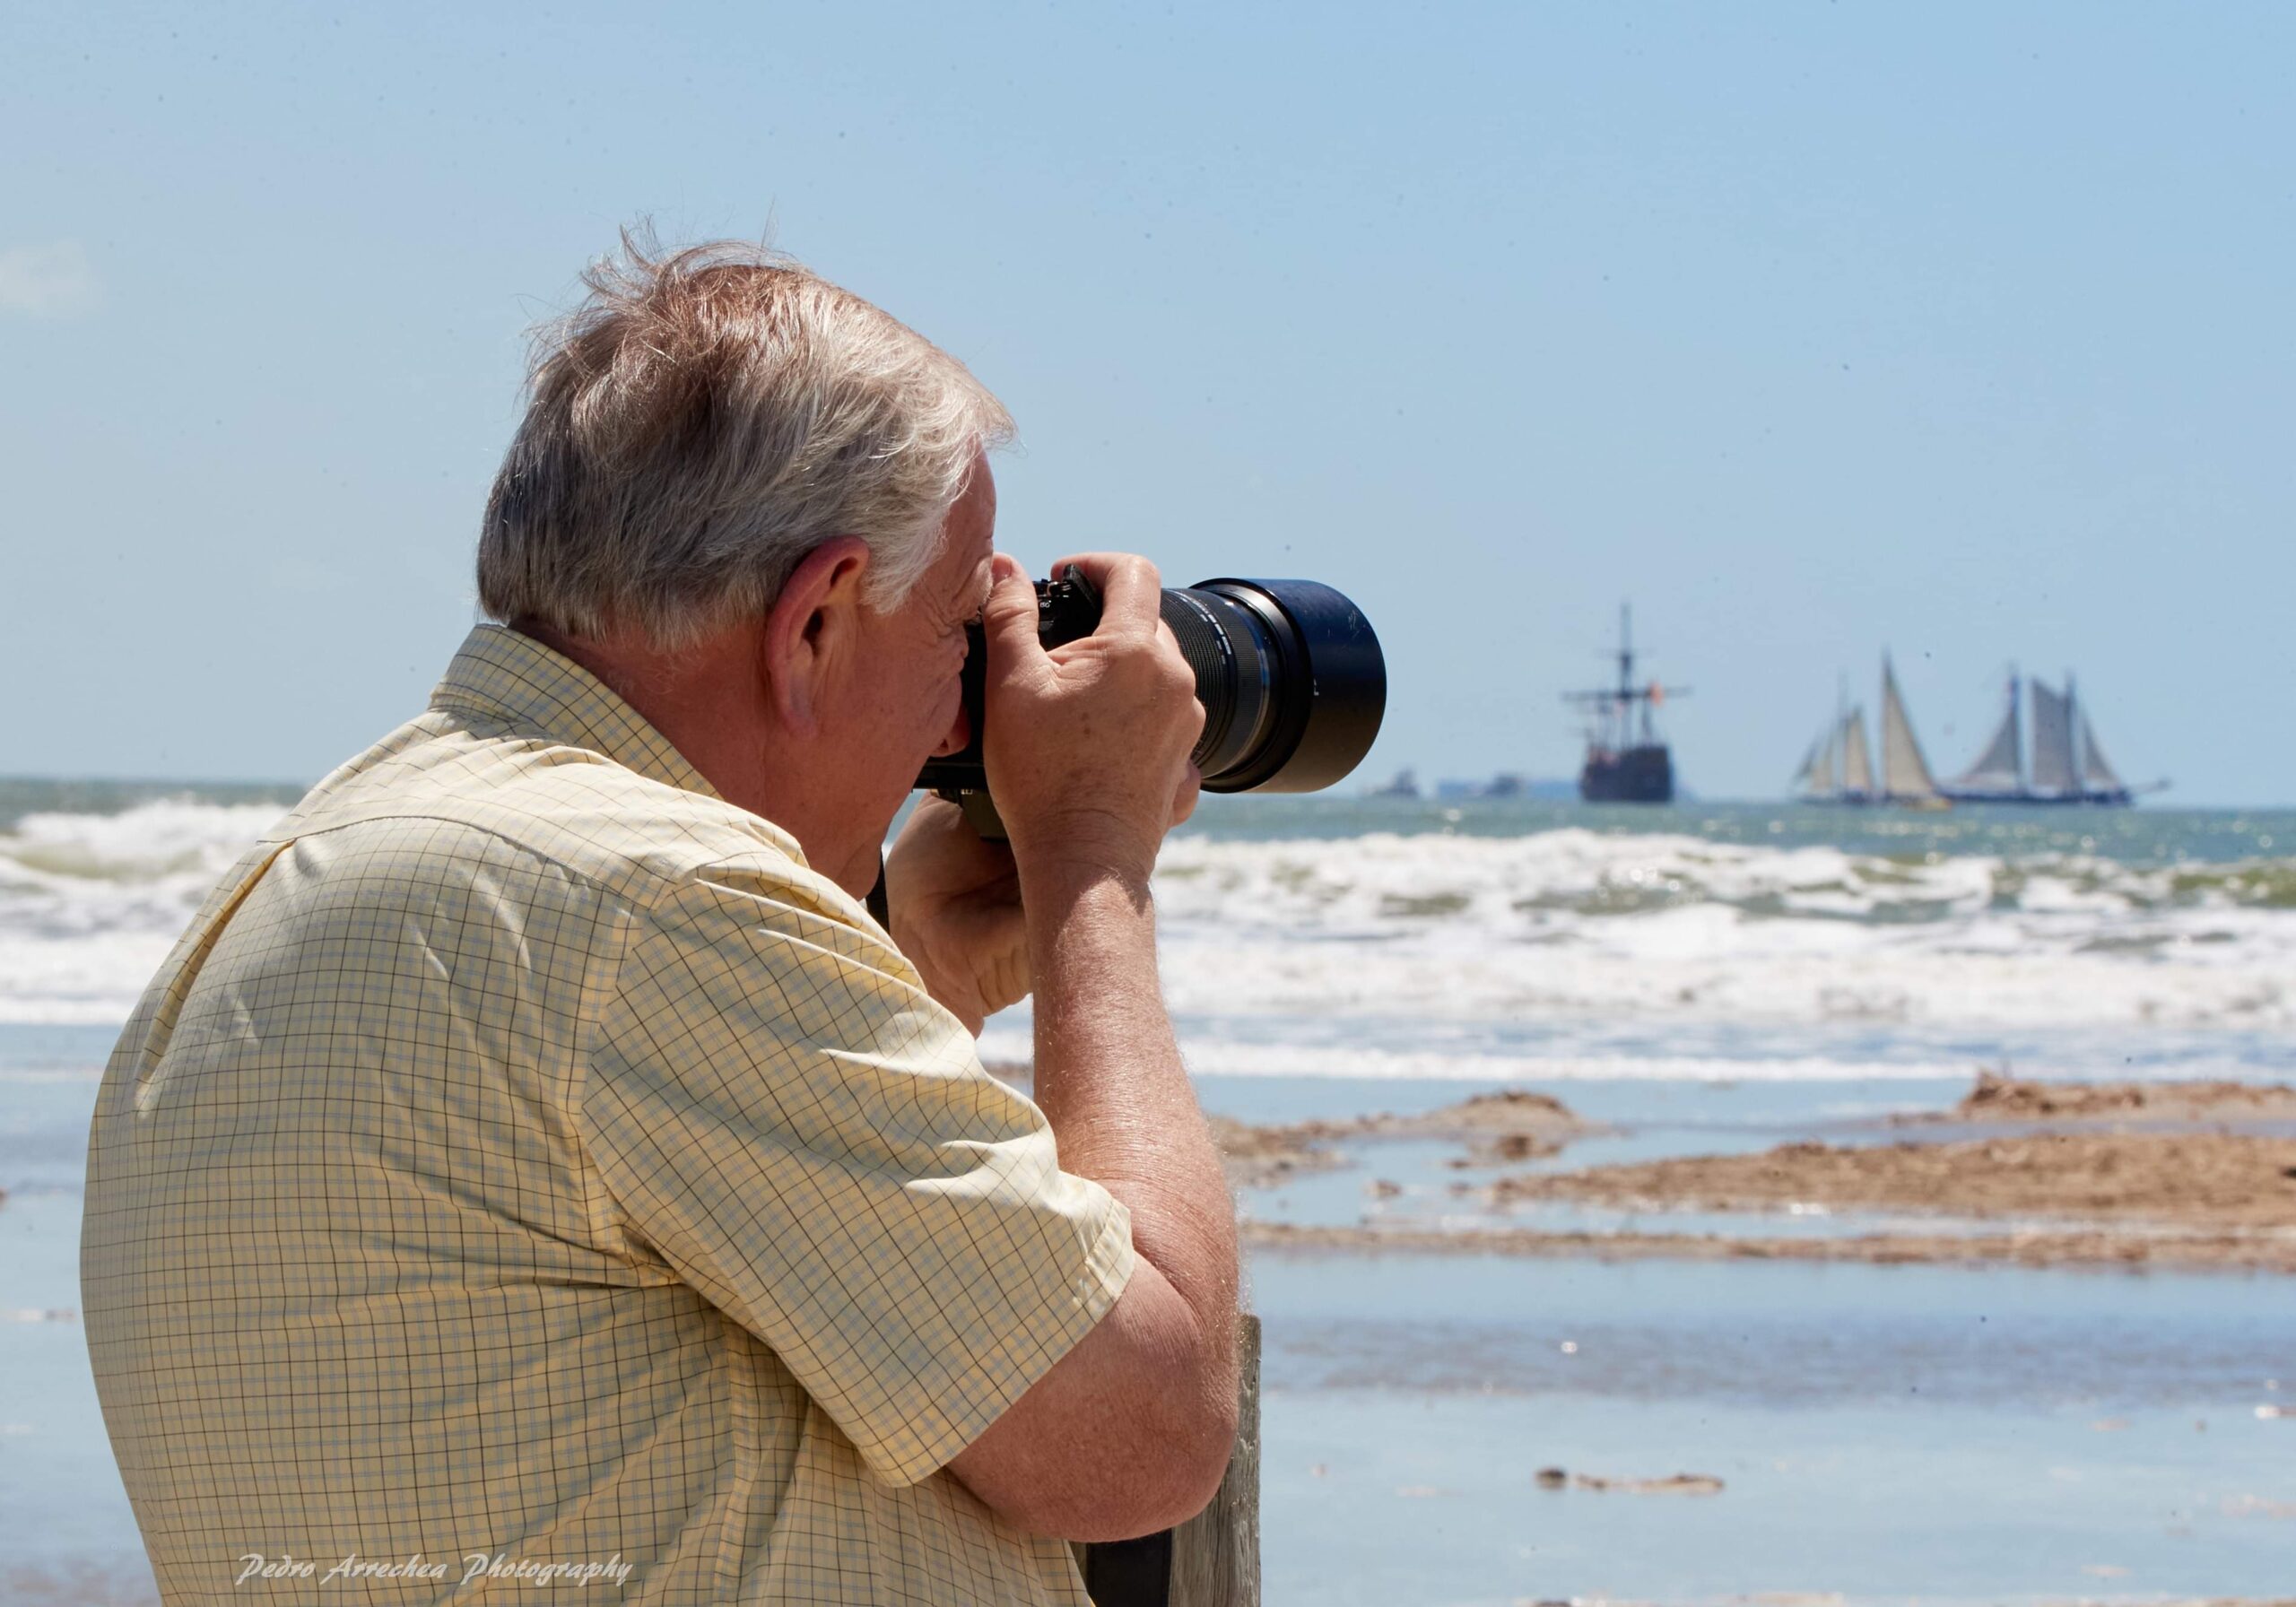 man taking a photo at the beach in port arthur texas